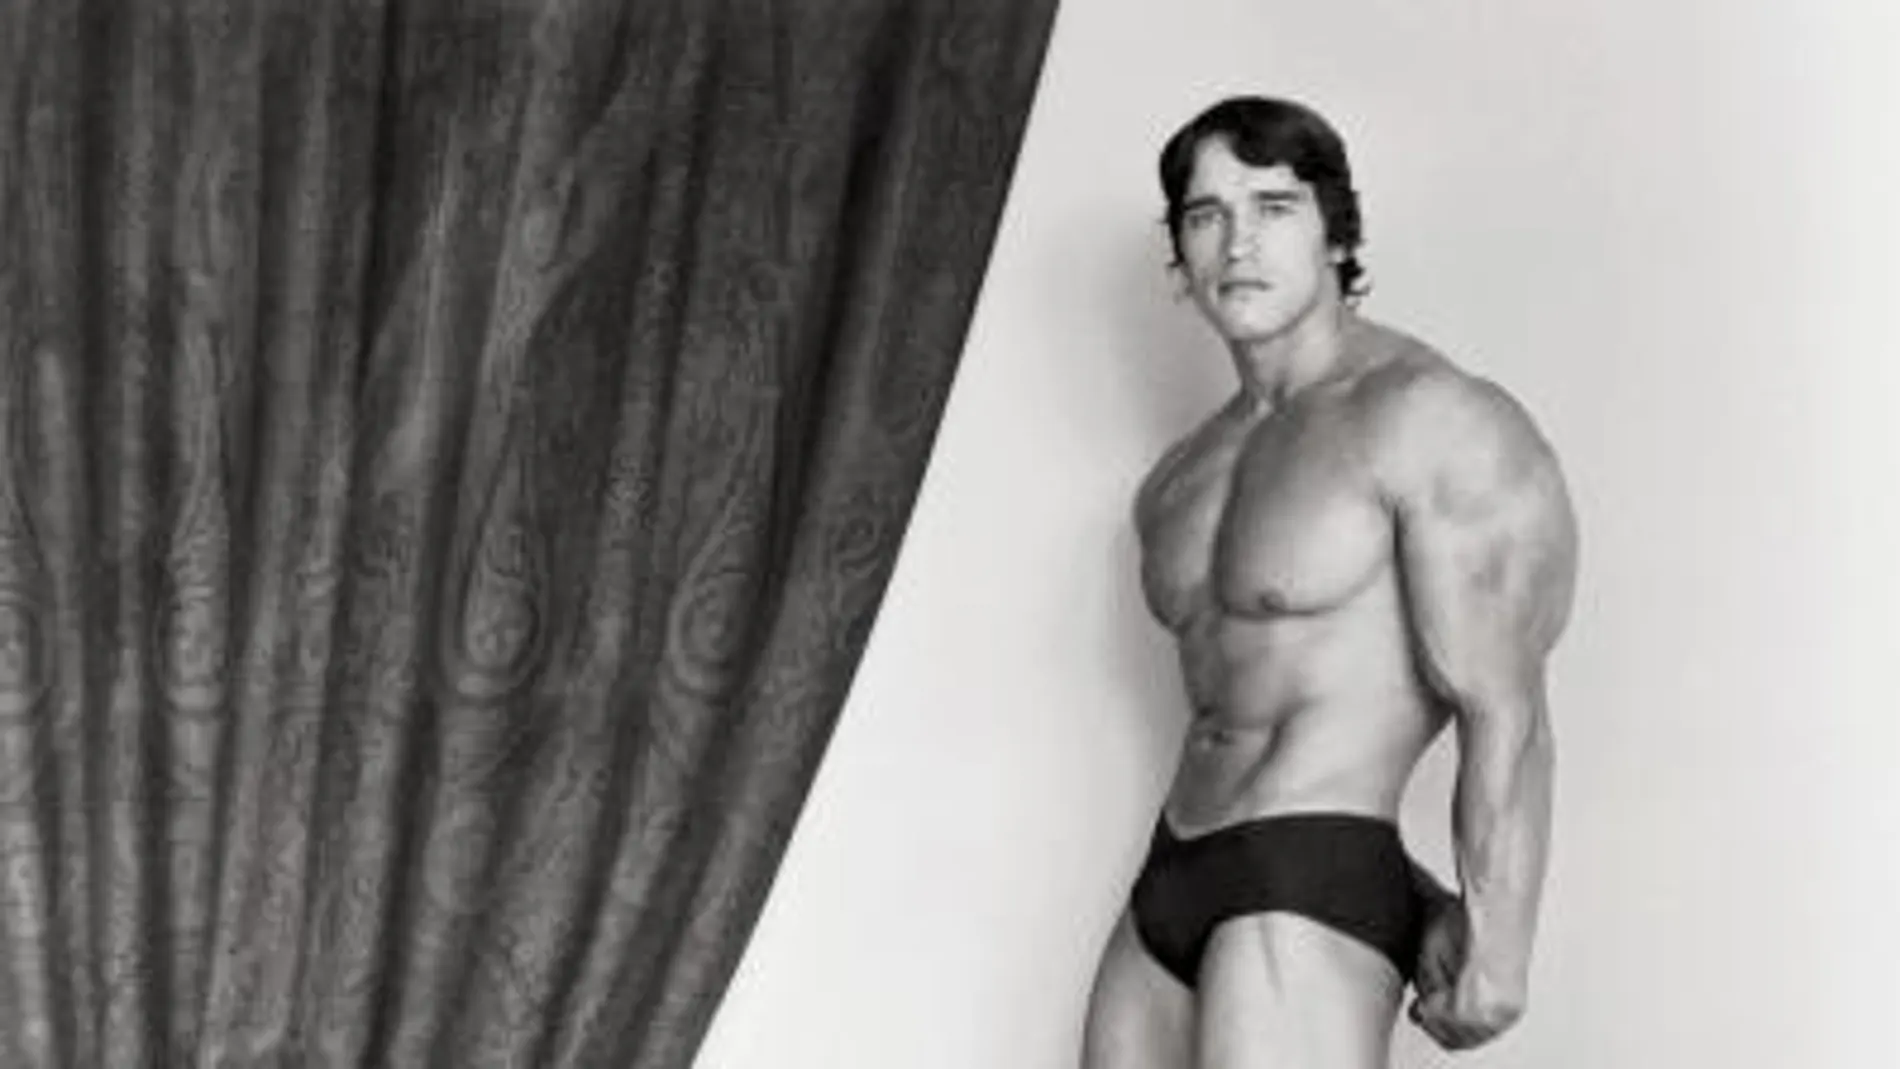 Retrato hecho por Robert Mapplethorpe a Arnold Schwarzenegger en 1976